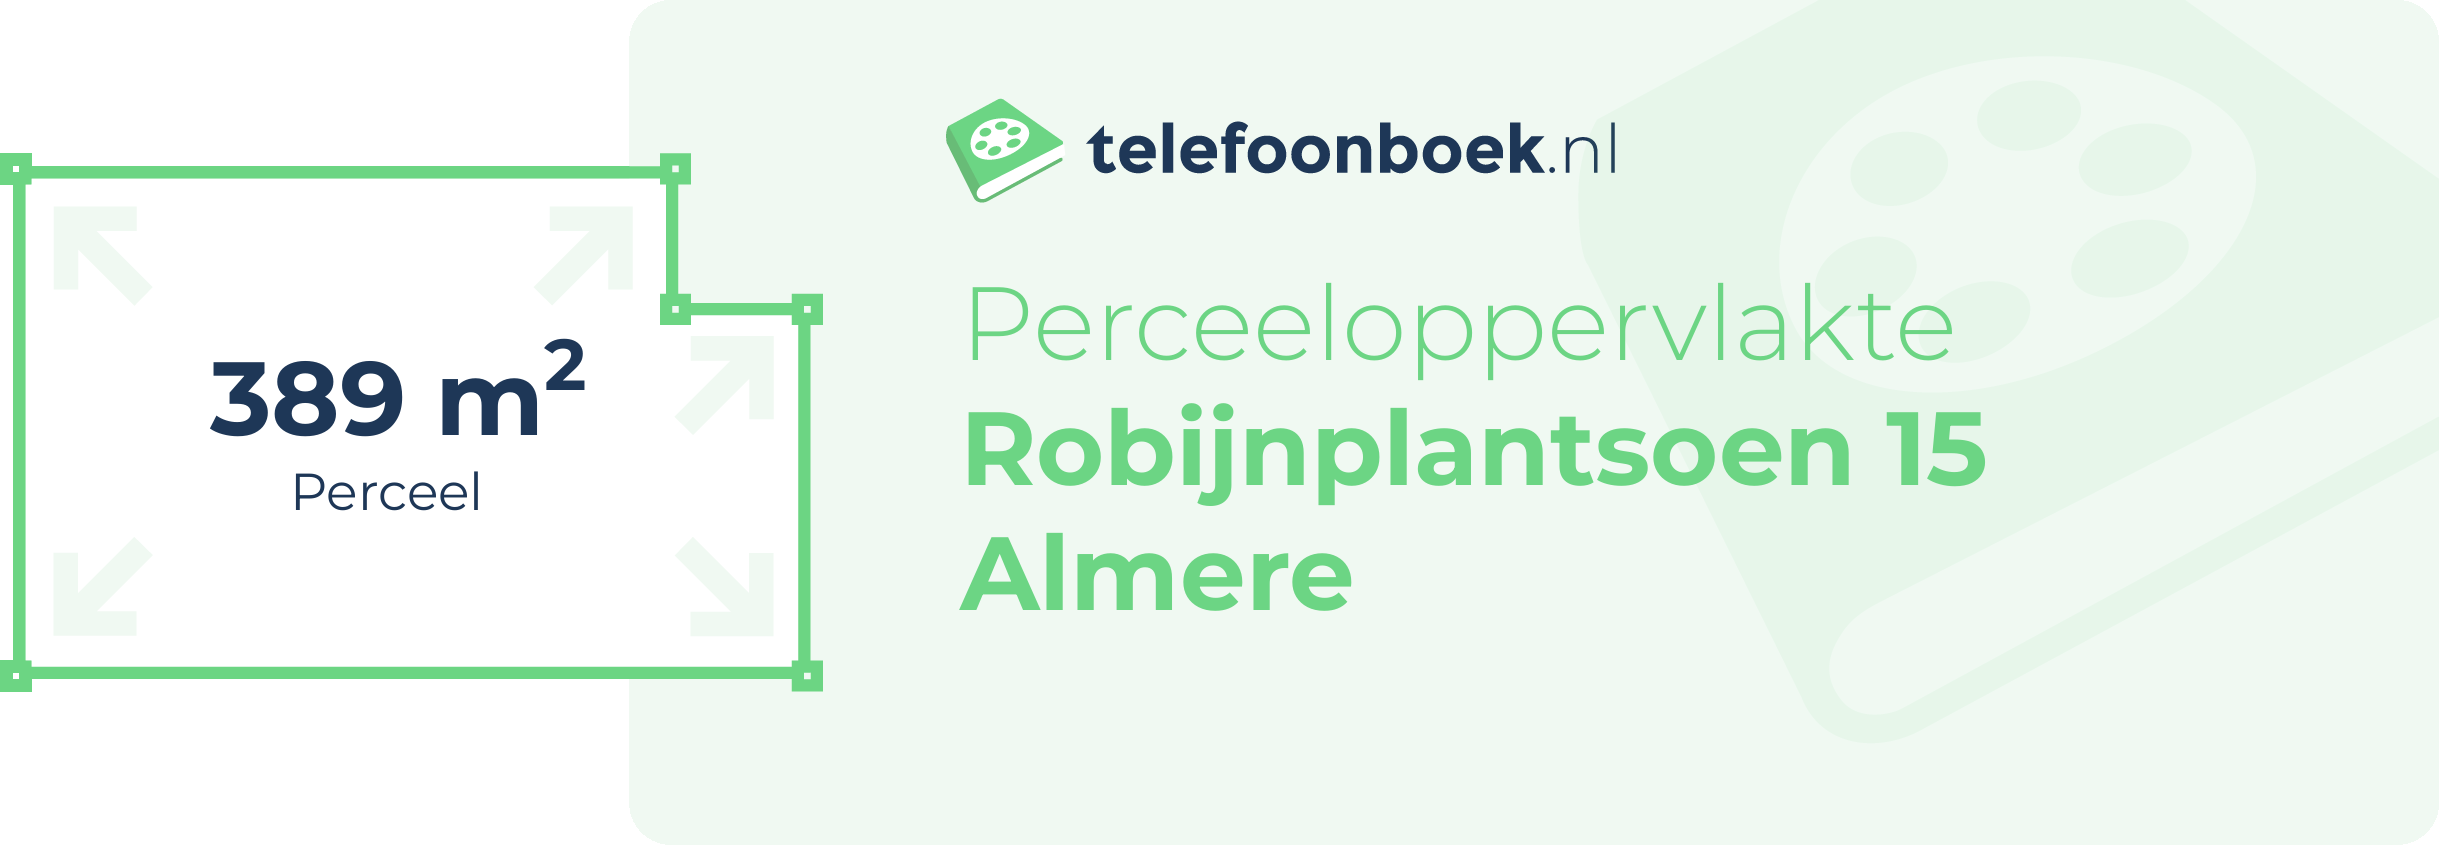 Perceeloppervlakte Robijnplantsoen 15 Almere